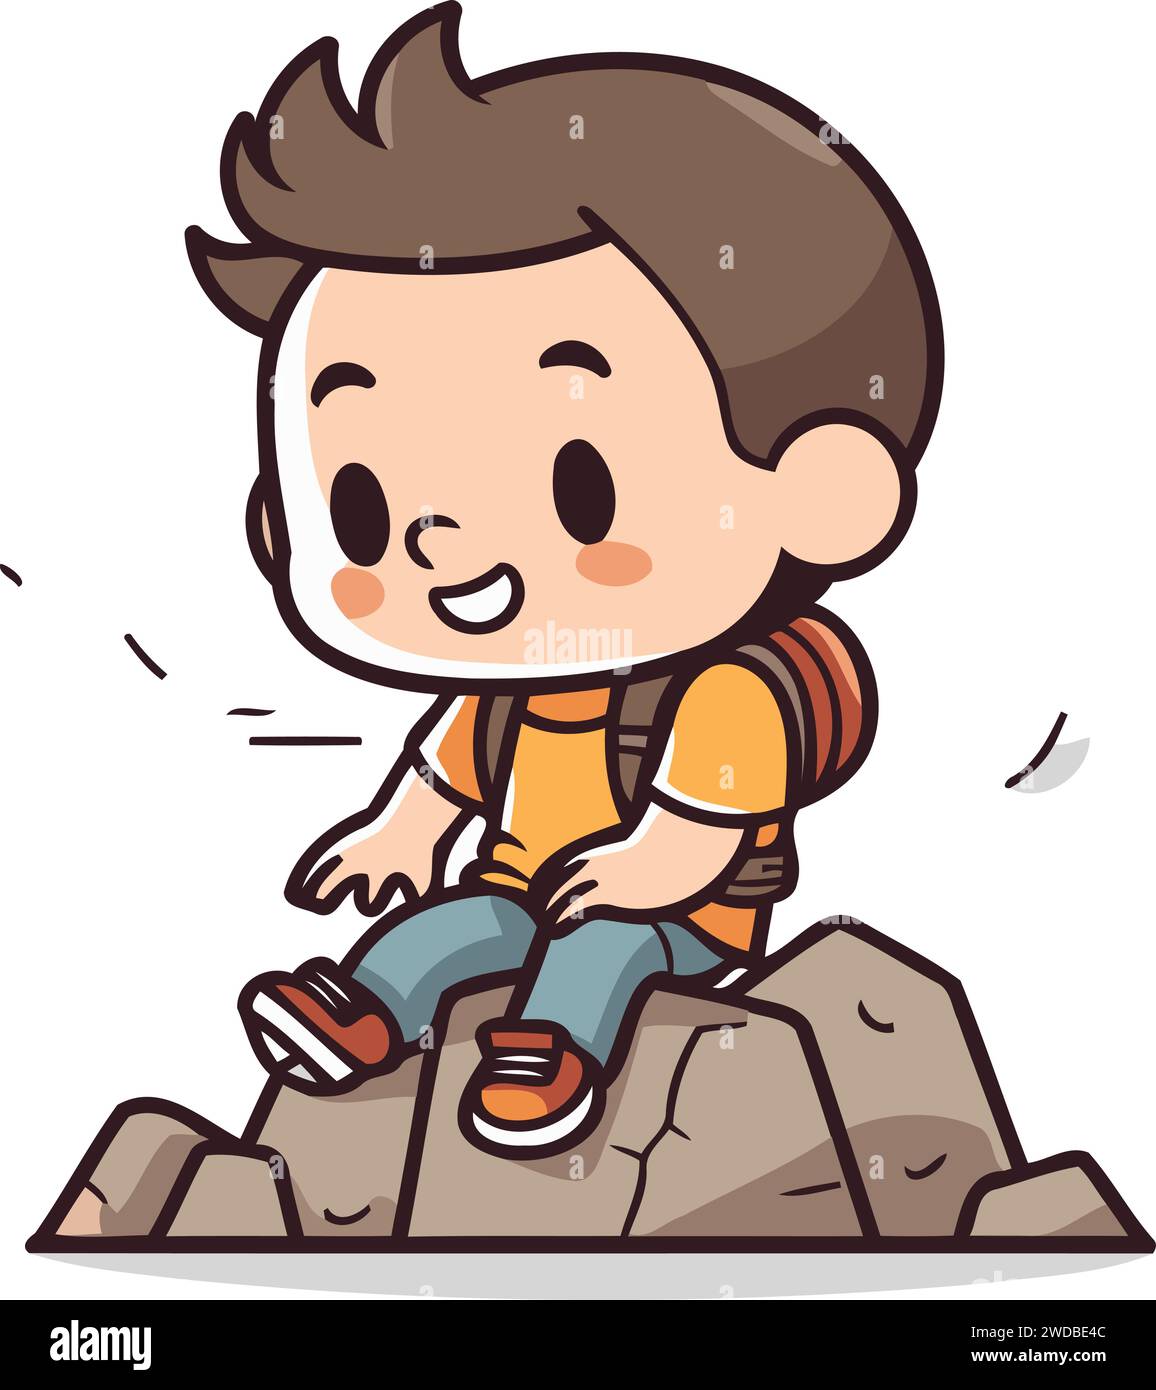 Little boy climbing on a rock. Vector illustration of a little boy climbing on a rock. Stock Vector